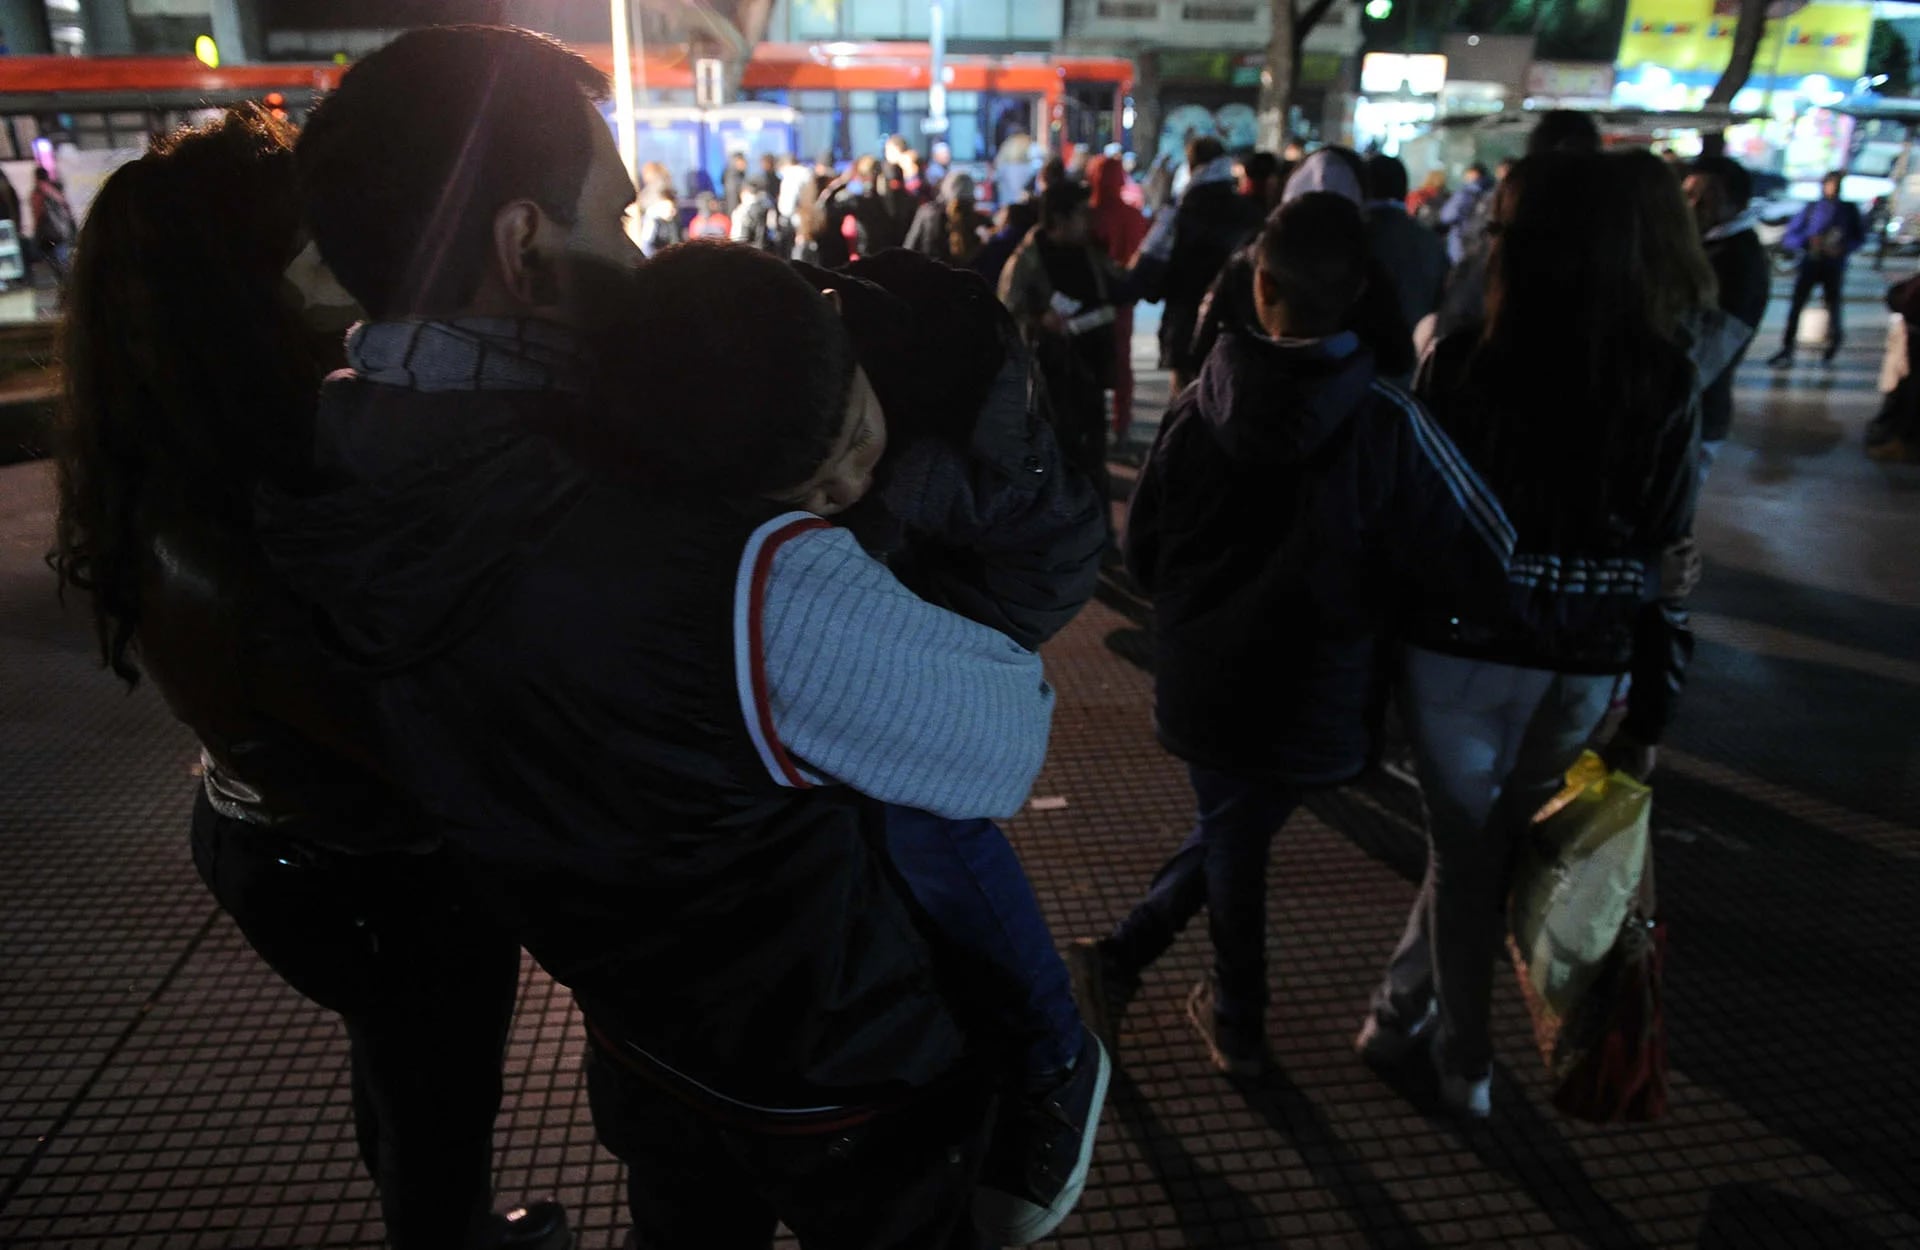 La línea ferroviaria Sarmiento, que corre habitualmente entre las terminales Once y Moreno, está paralizada por una huelga de 24 horas que afecta a unos 350 mil pasajeros que utilizan a diario el servicio (Télam)